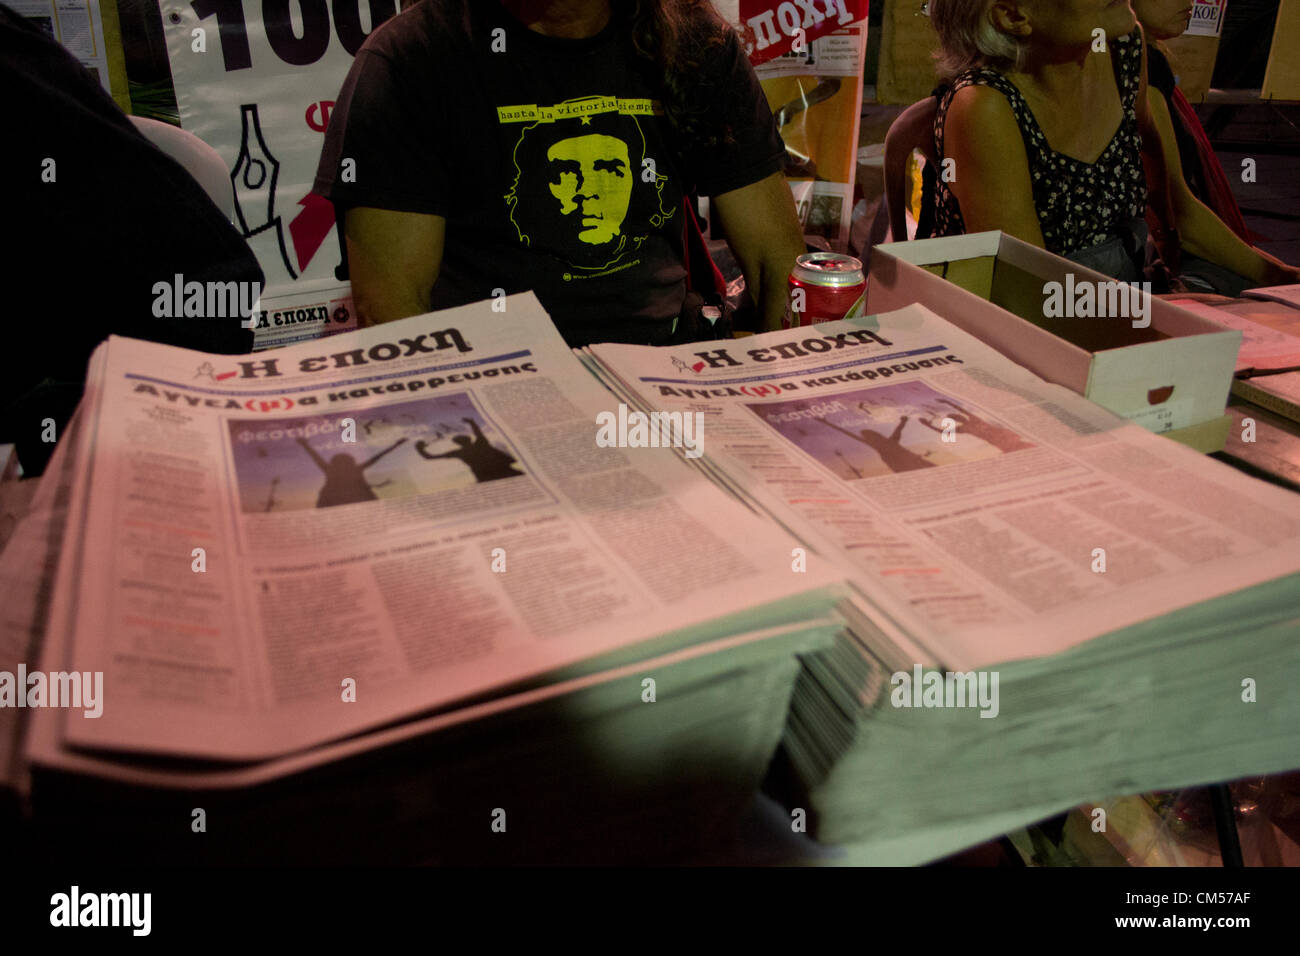 Athen, Griechenland, 6. Oktober 2012. Die Jugendlichen Mitglieder der griechischen Opposition, linke Partei SYRIZA organisieren ein fest. Bildnachweis: Nikolas Georgiou / Alamy Live News Stockfoto